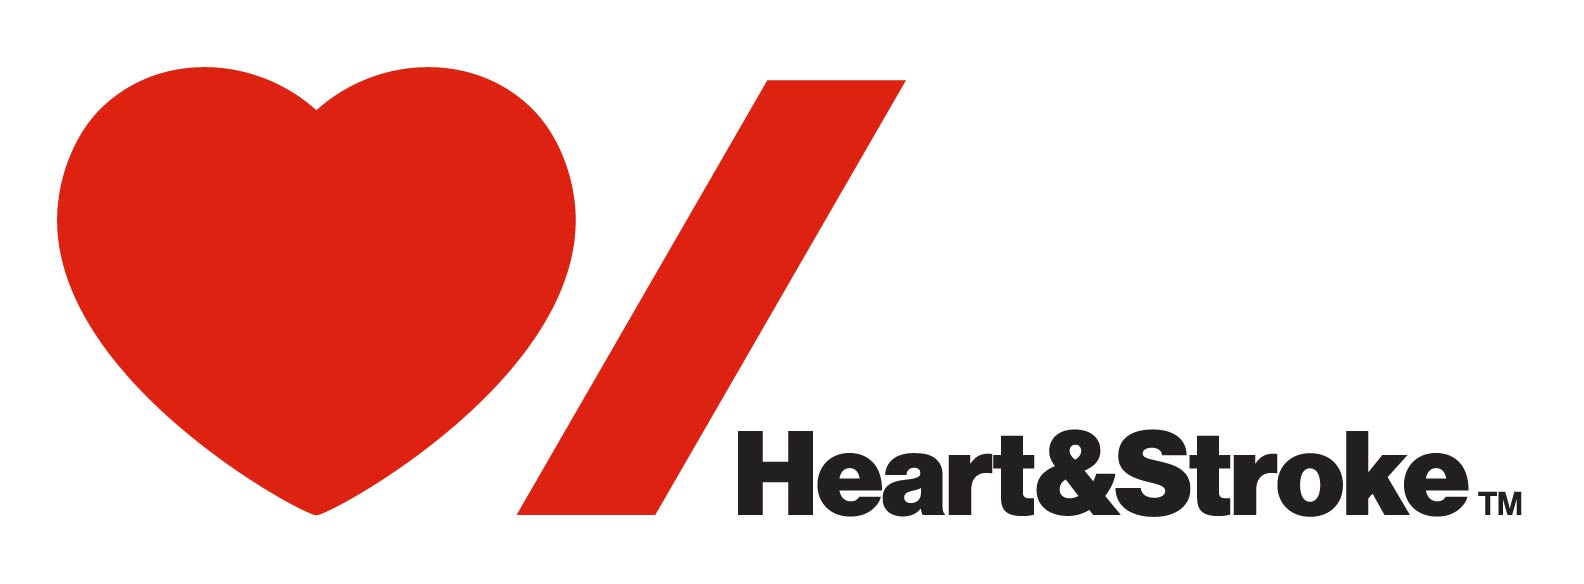 Heart-Stroke-new-logo-ENG (002).jpg